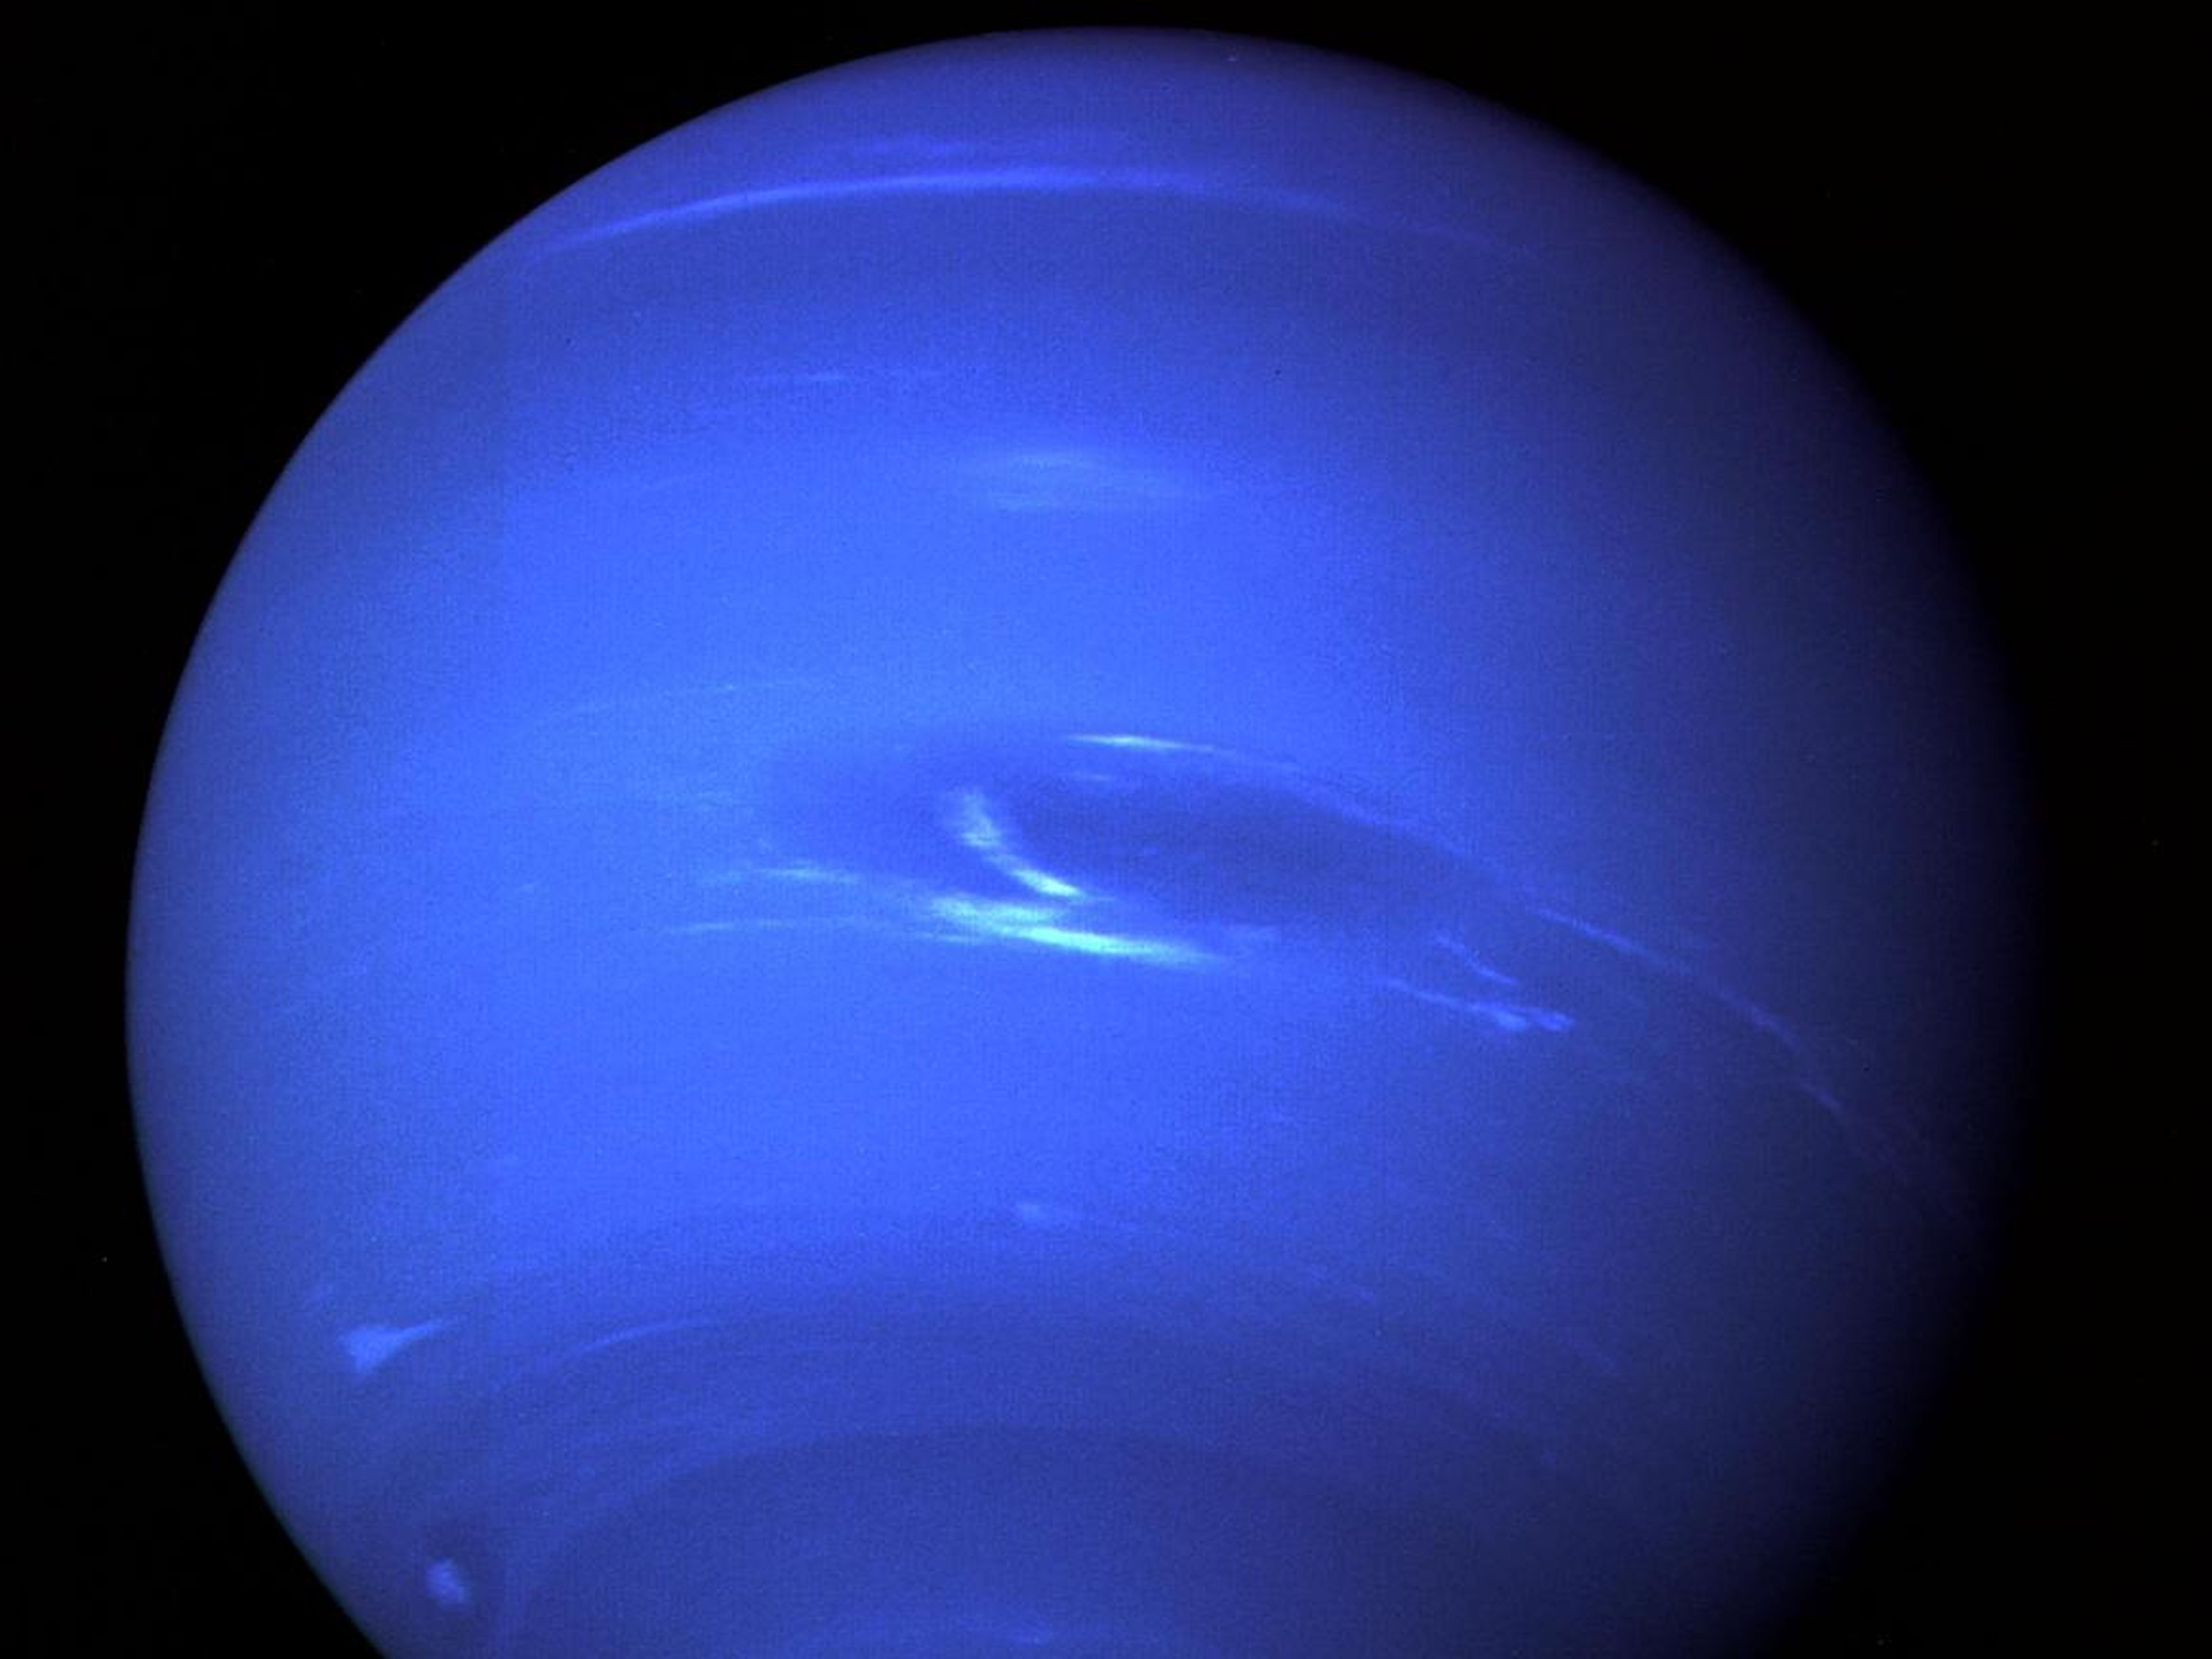 Imagen de Neptuno tomada por la Voyager 2 tiene una atmósfera hecha de hidrógeno, helio y metano.